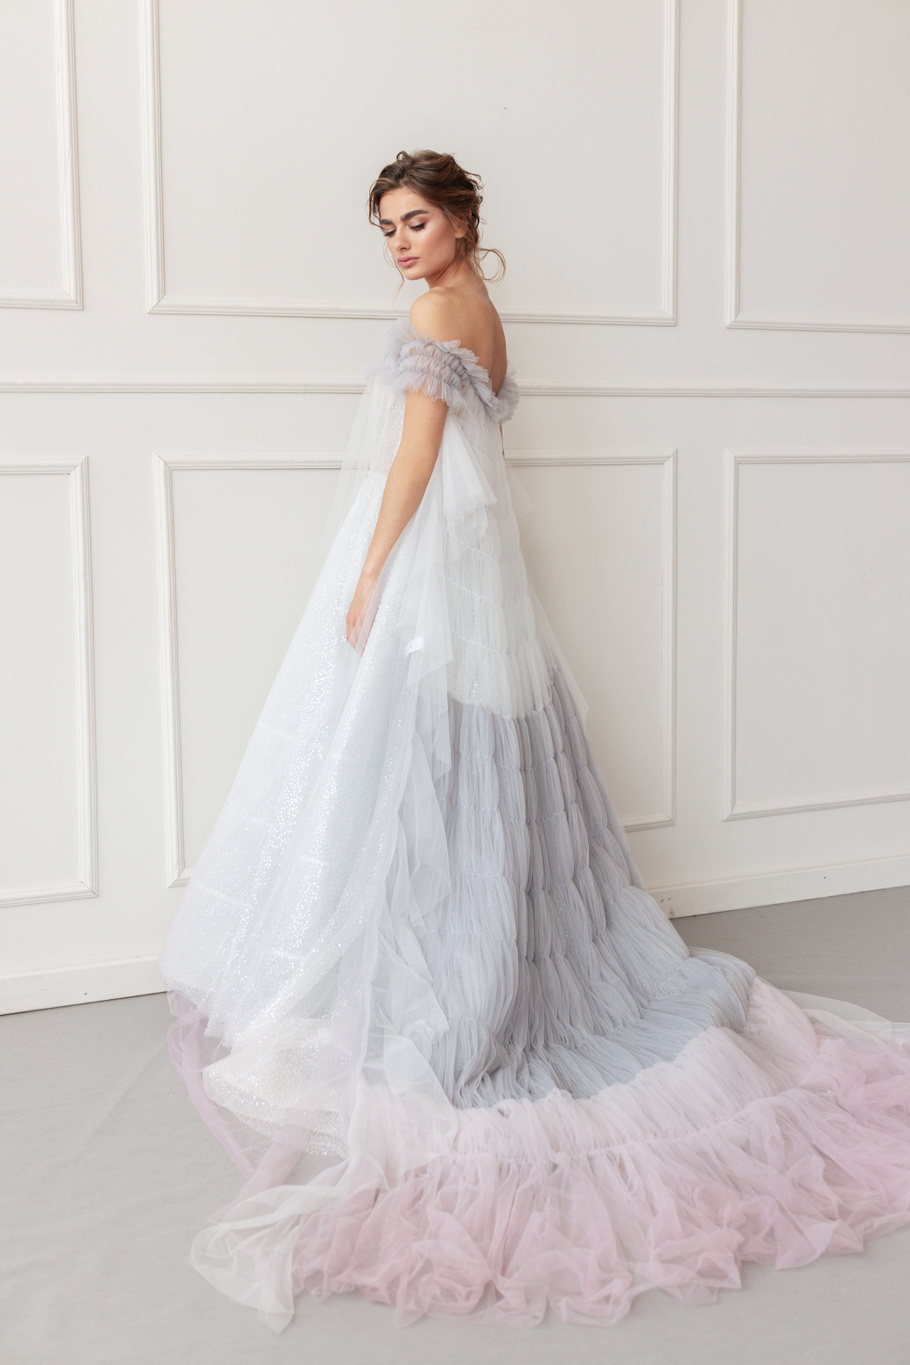 Купить свадебное платье «Скарлет+Рене» Анже Этуаль из коллекции 2020 года в салоне «Мэри Трюфель»